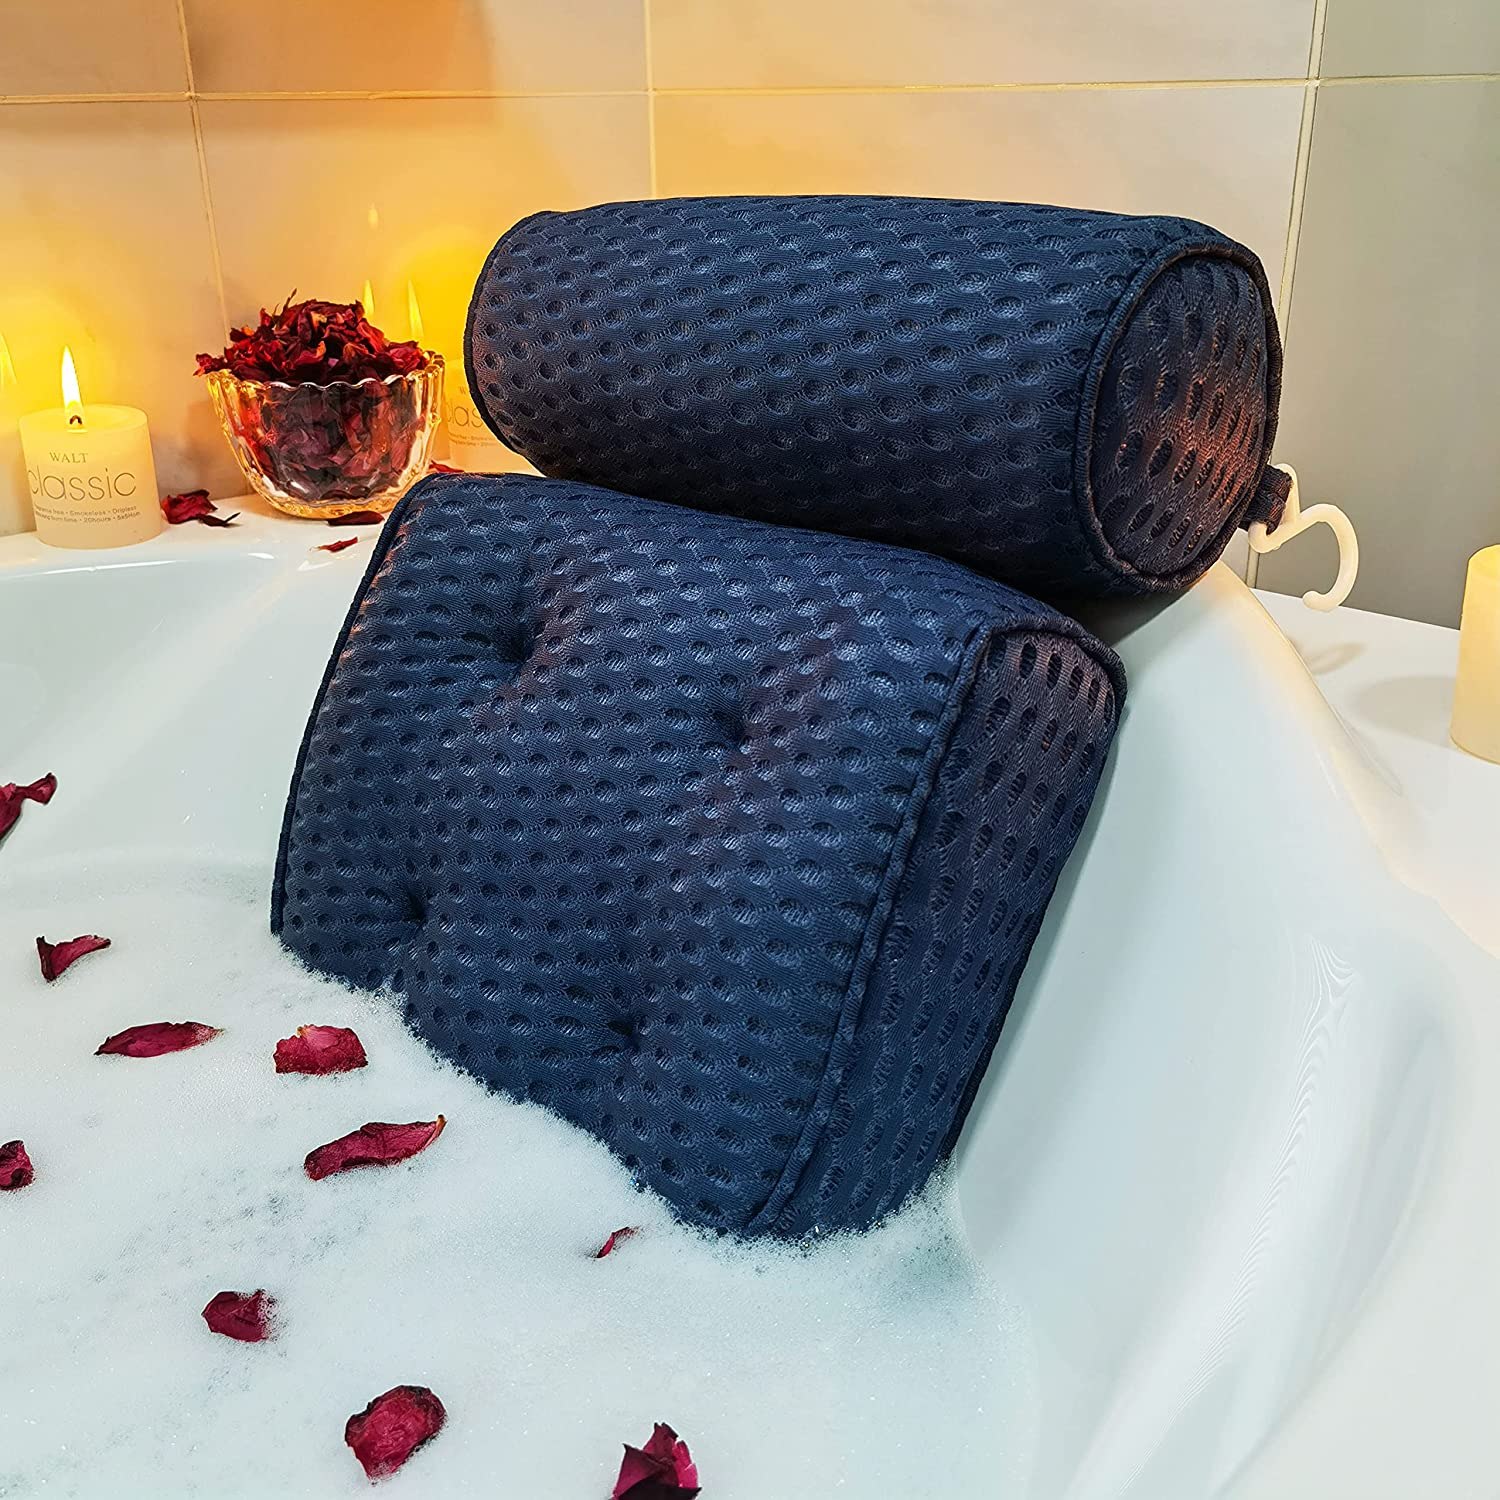 COMFYSURE Bath Cushion for Tub - Extra-Large Full Body Bath Tub